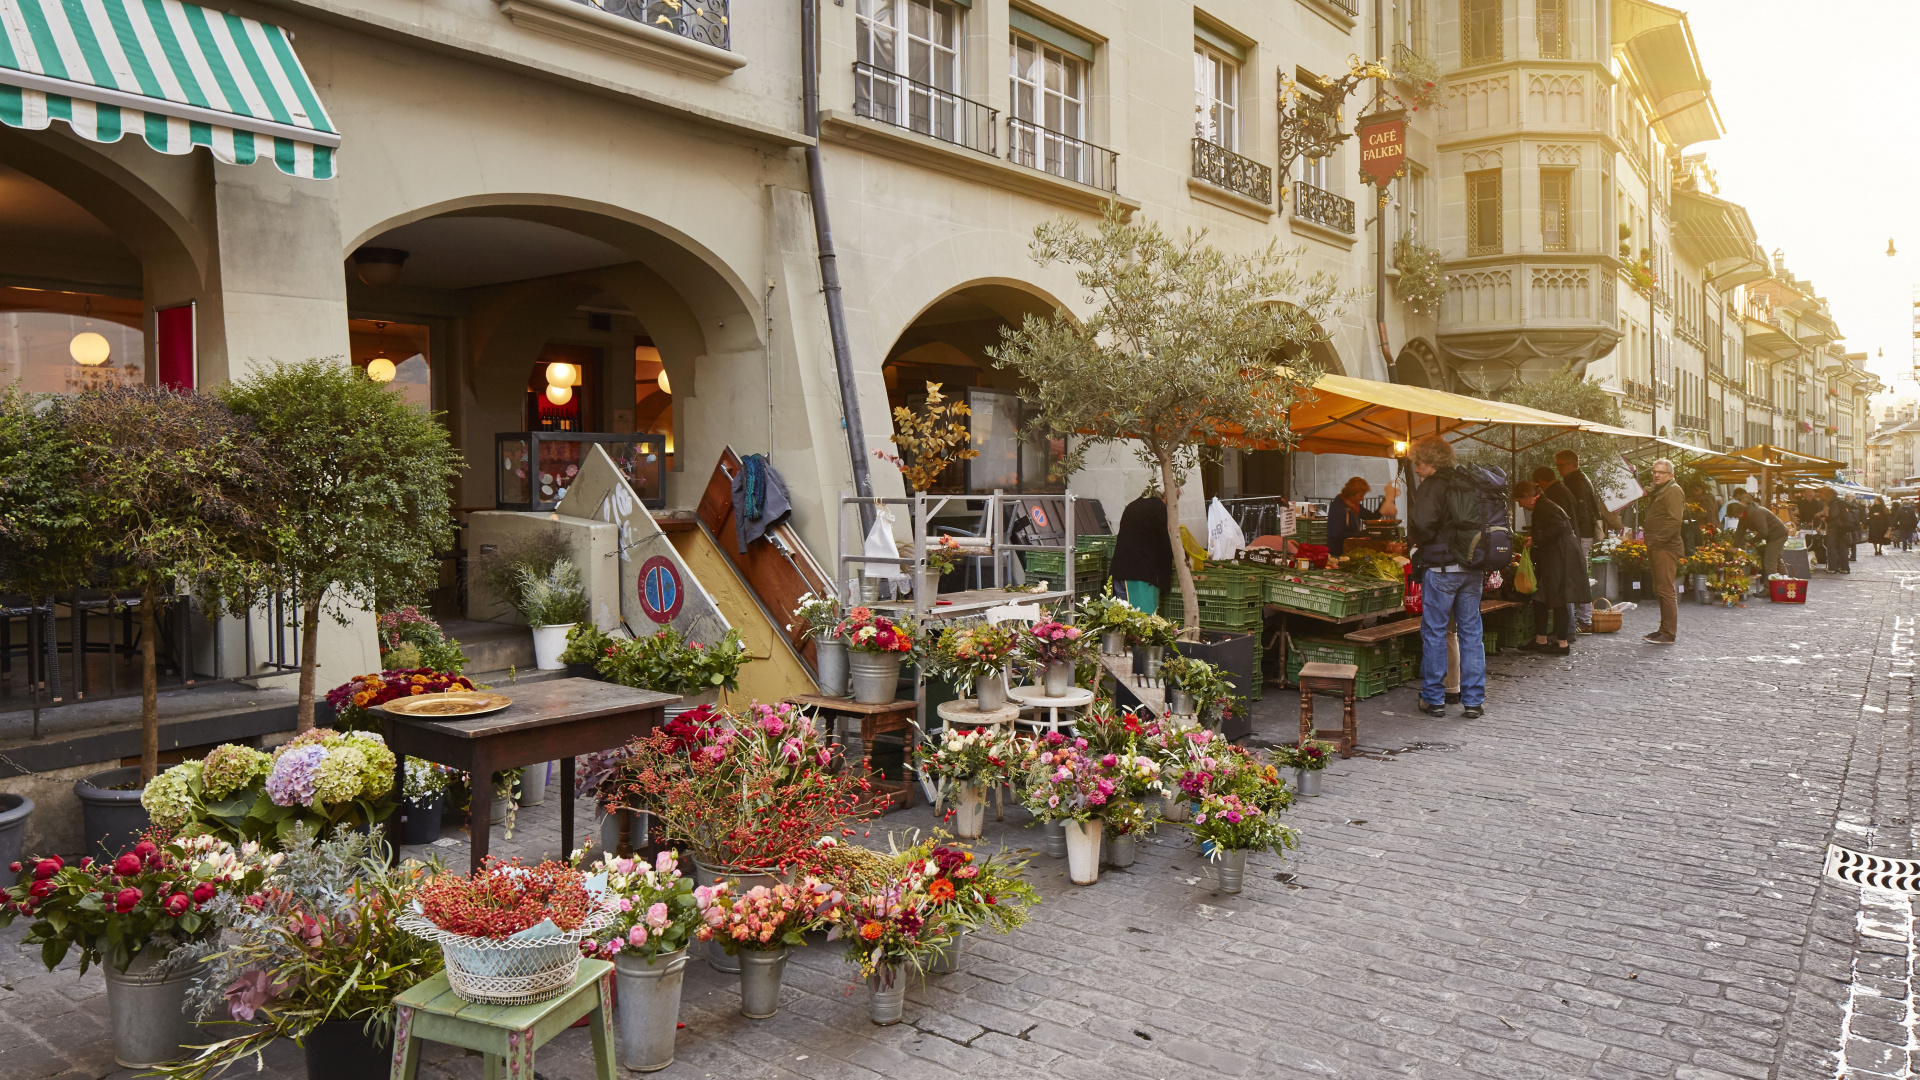 18 richtig gute Gründe, in der Berner Altstadt zu shoppen - Bern Welcome